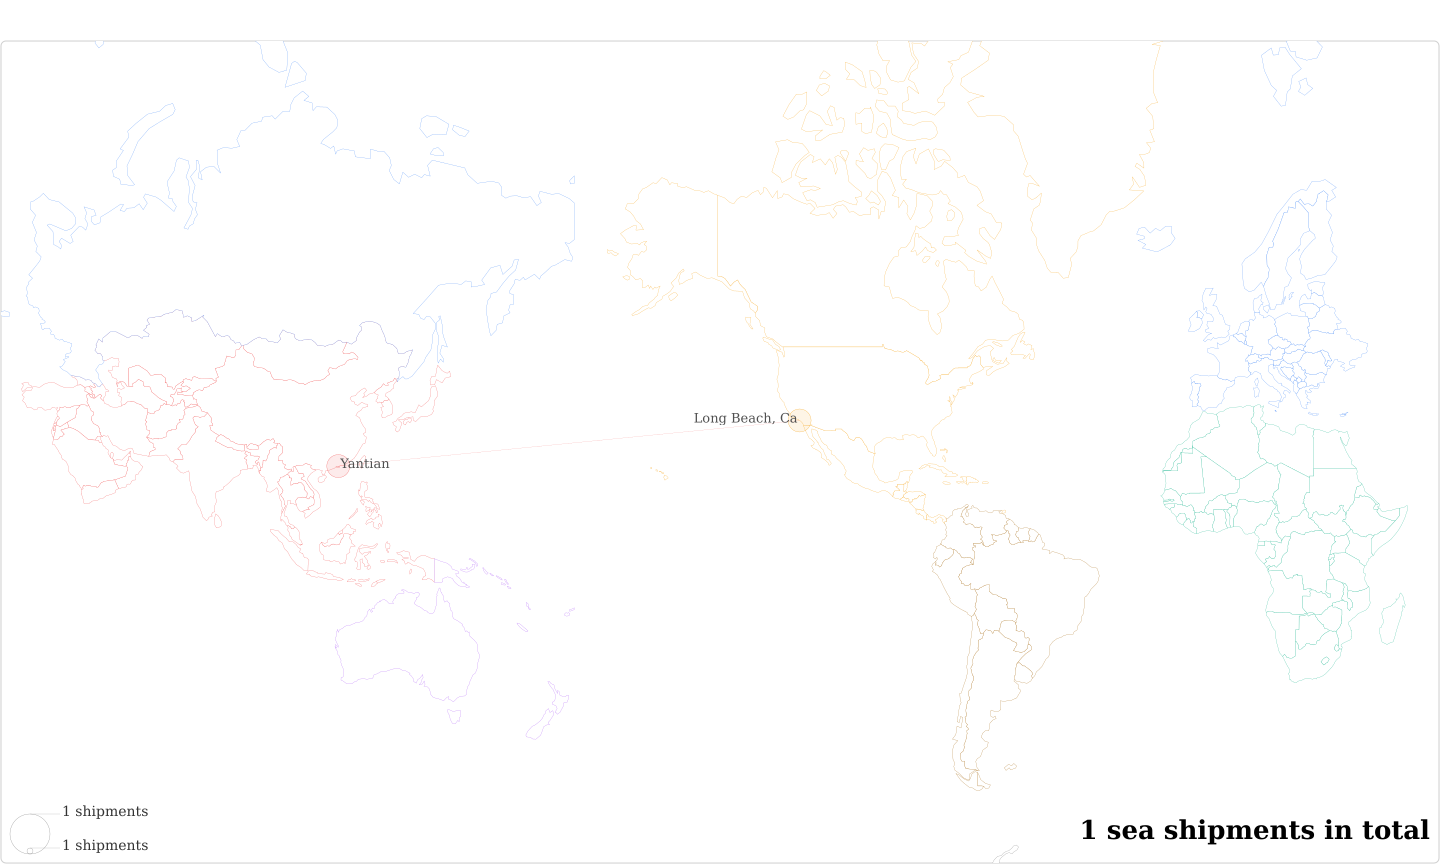 Daniel Gwozdz's Imports Per Country Map